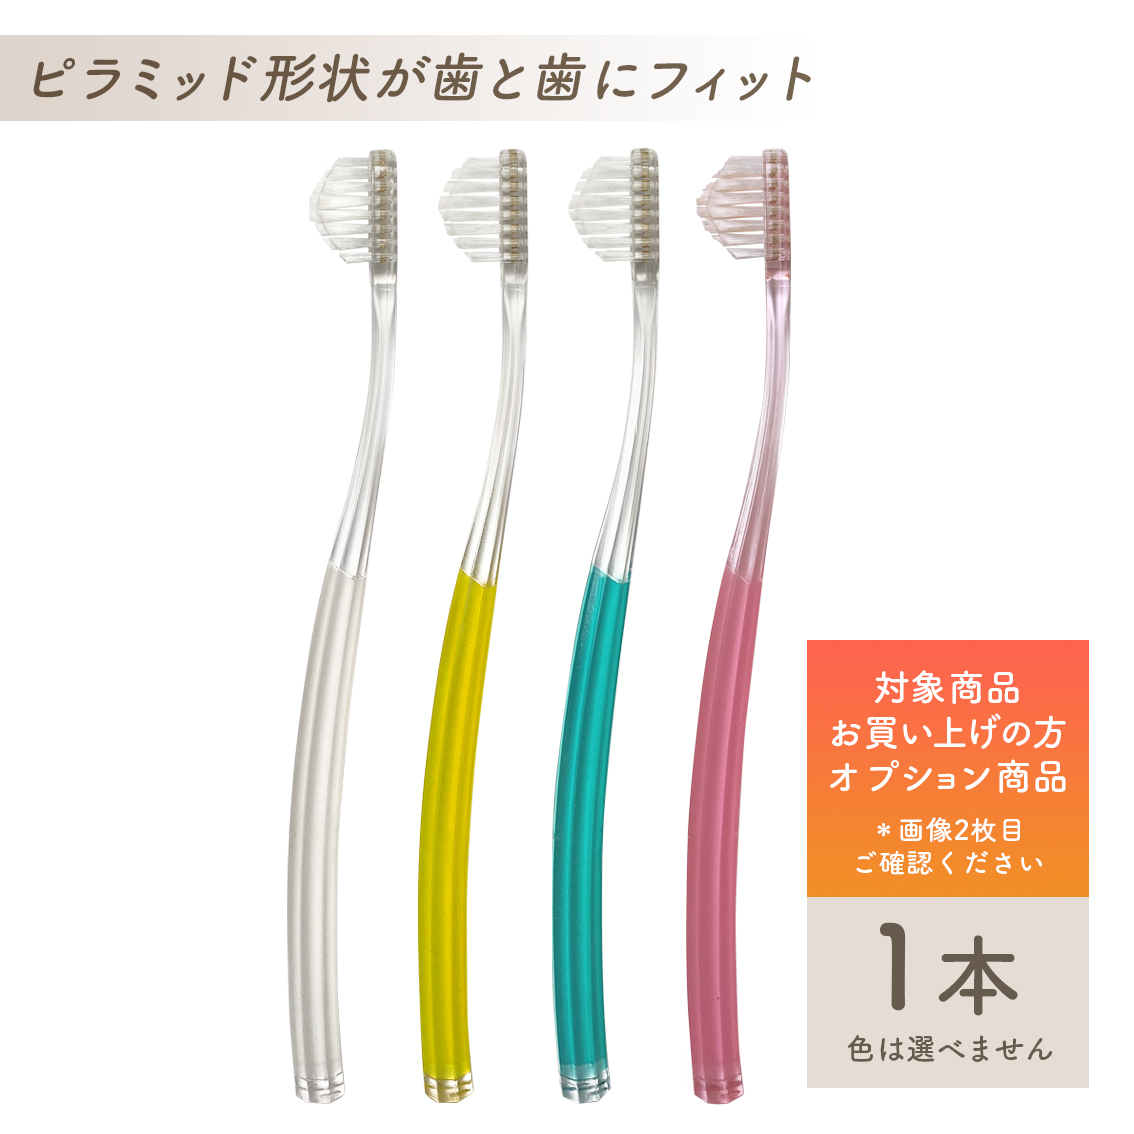 逆輸入 奇跡の歯ブラシ こども用 2本セット 色選べます 本数変更も可能